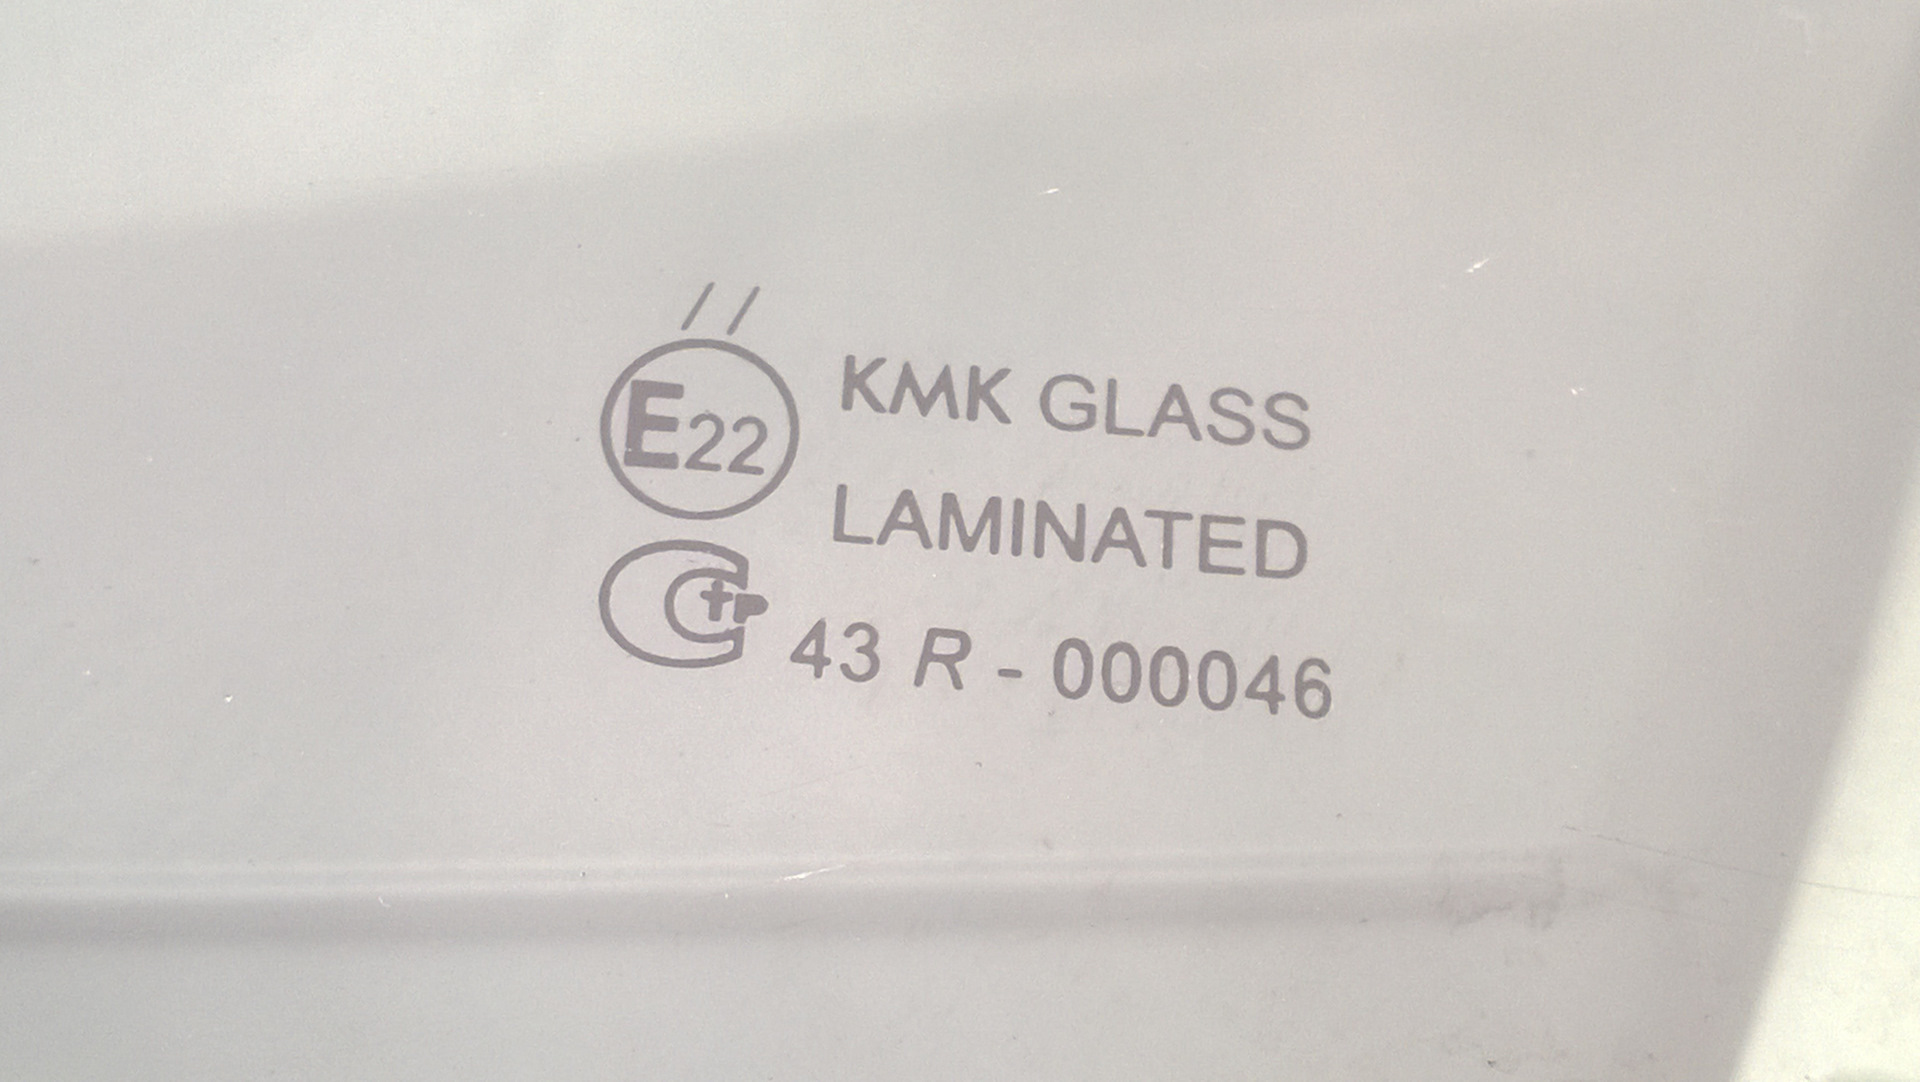 Стекло kmk отзывы. КМК стекла. Расшифровка стекол KMK. KMK стекла расшифровка. Расшифровка стекол KMK Glass.